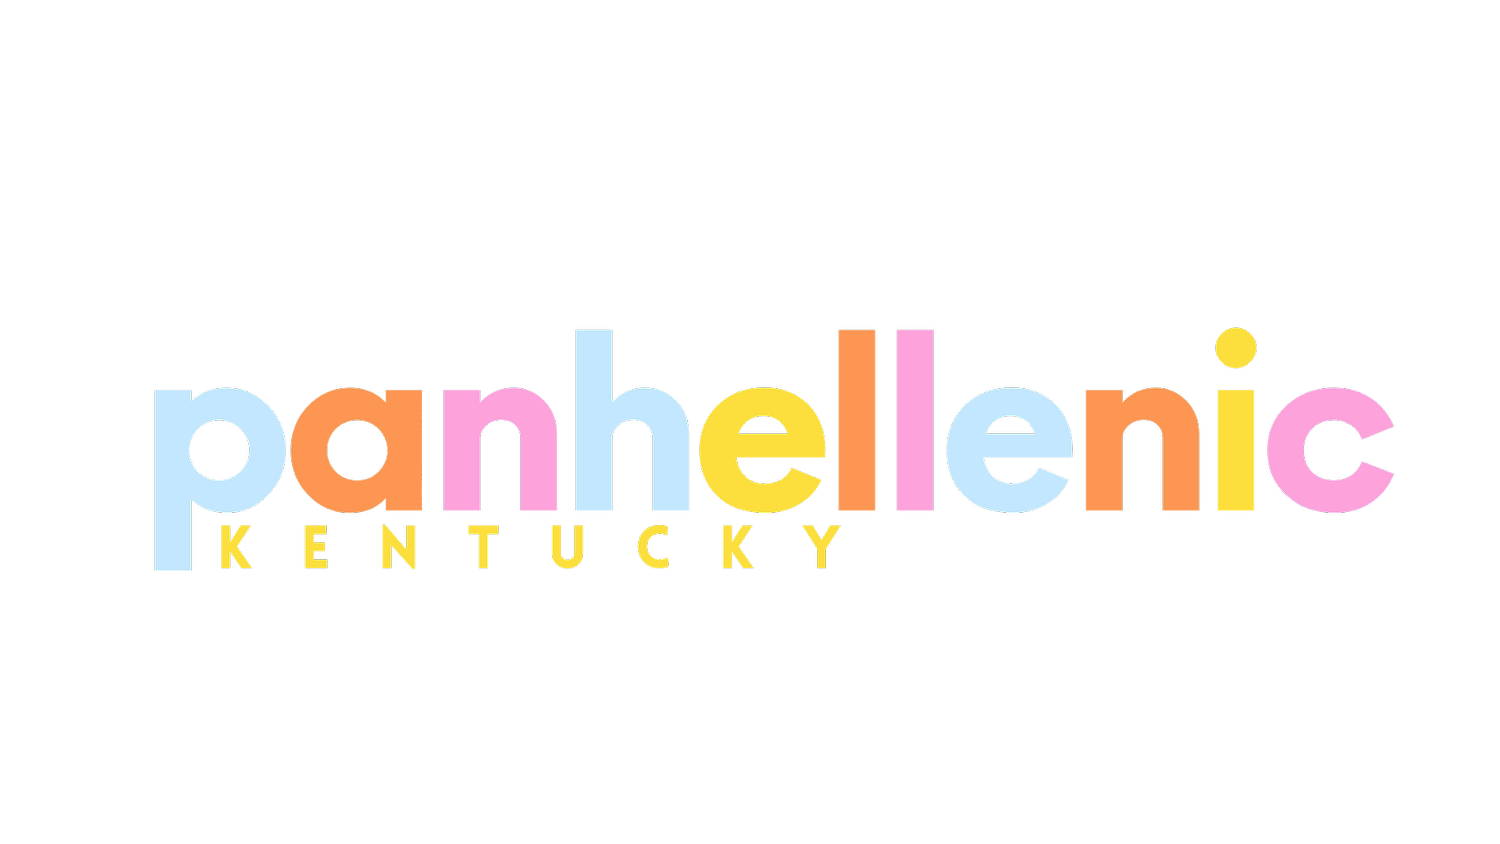 Kentucky Panhellenic